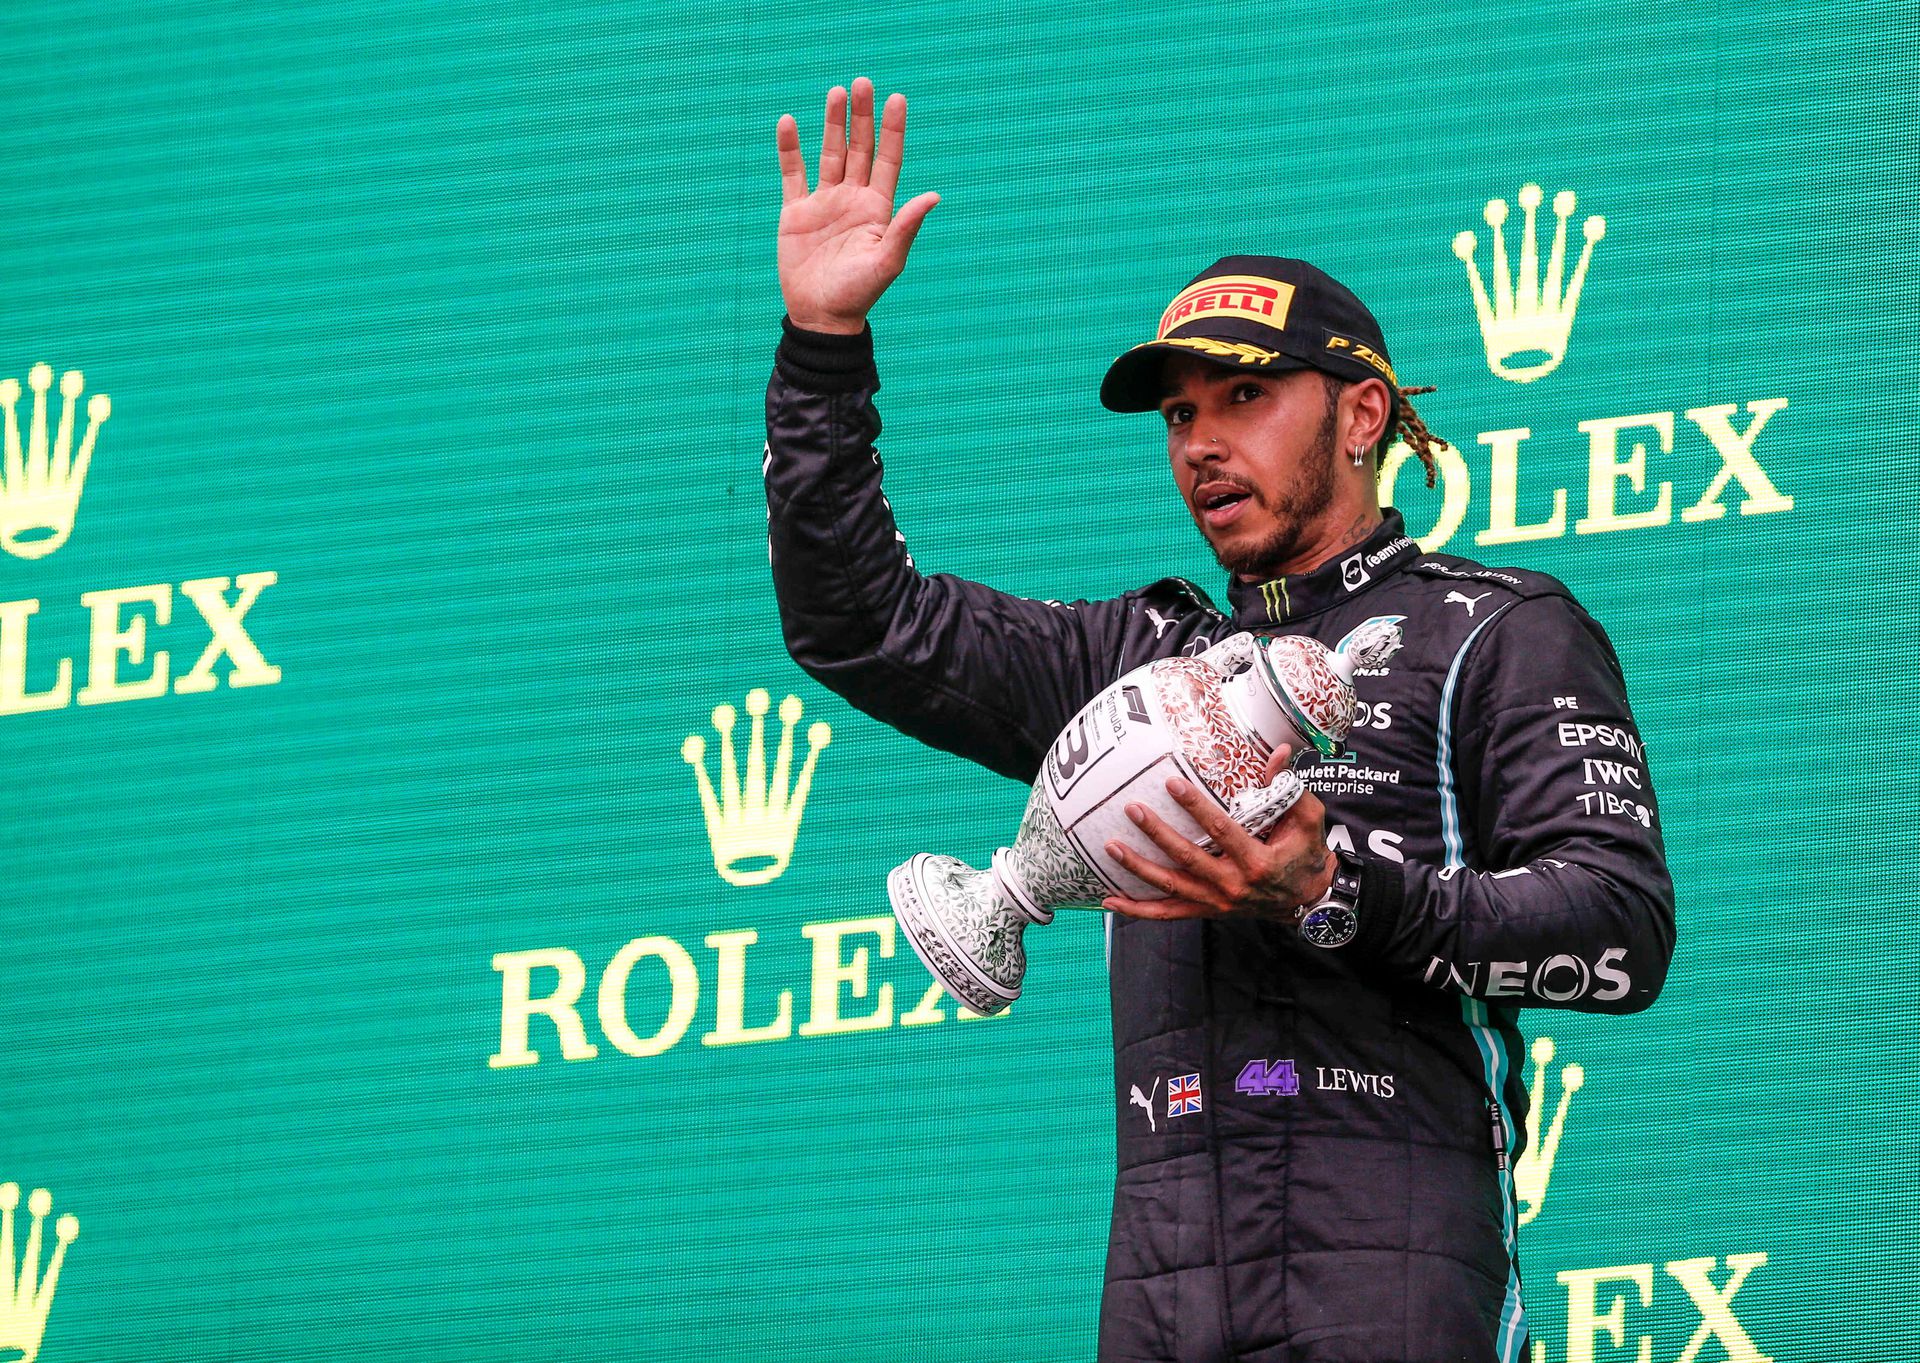 Lewis Hamilton két hete még harminchárom pontos hátrányban volt, aztán győzött a Brit Nagydíjon, a Magyar GP-n pedig második lett, így már vezeti a vébét, nyolcpontos az előnye / Fotó: Profimedia